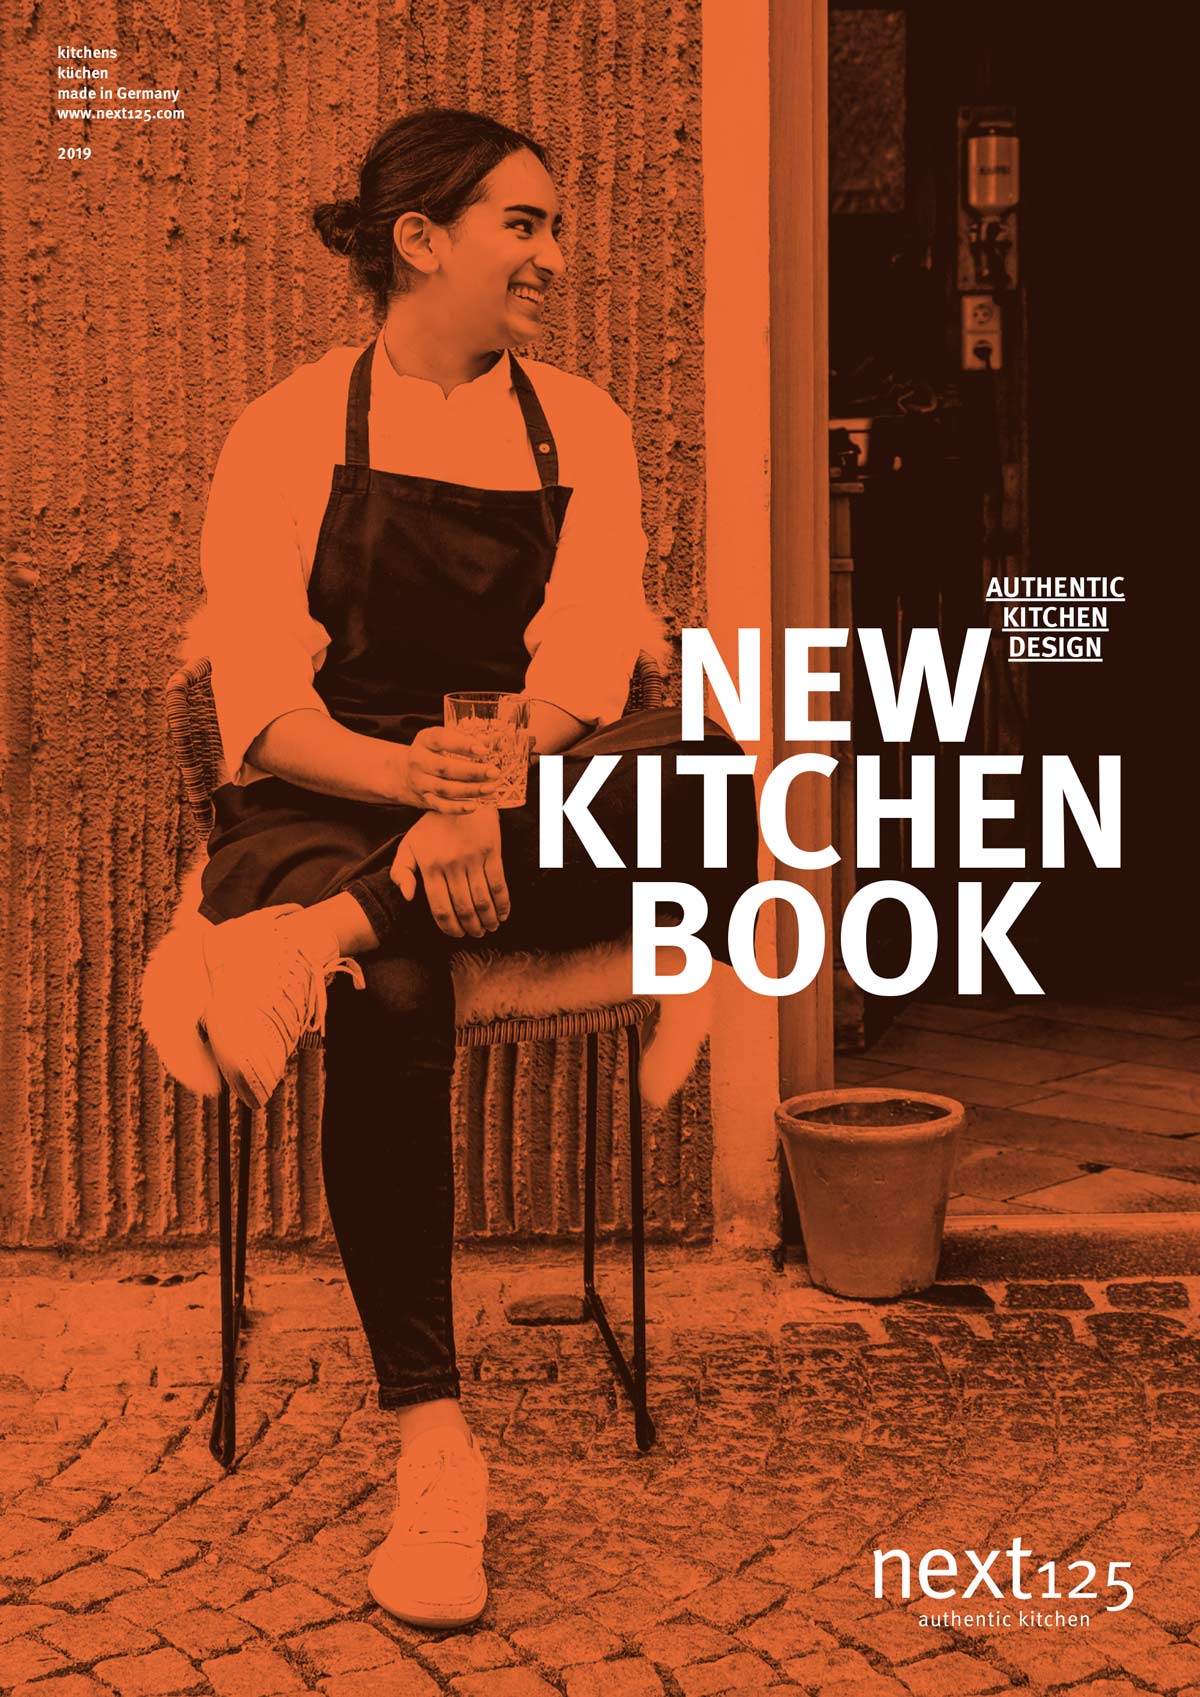 next125 Katalog 2019 - NEW KITCHEN BOOK